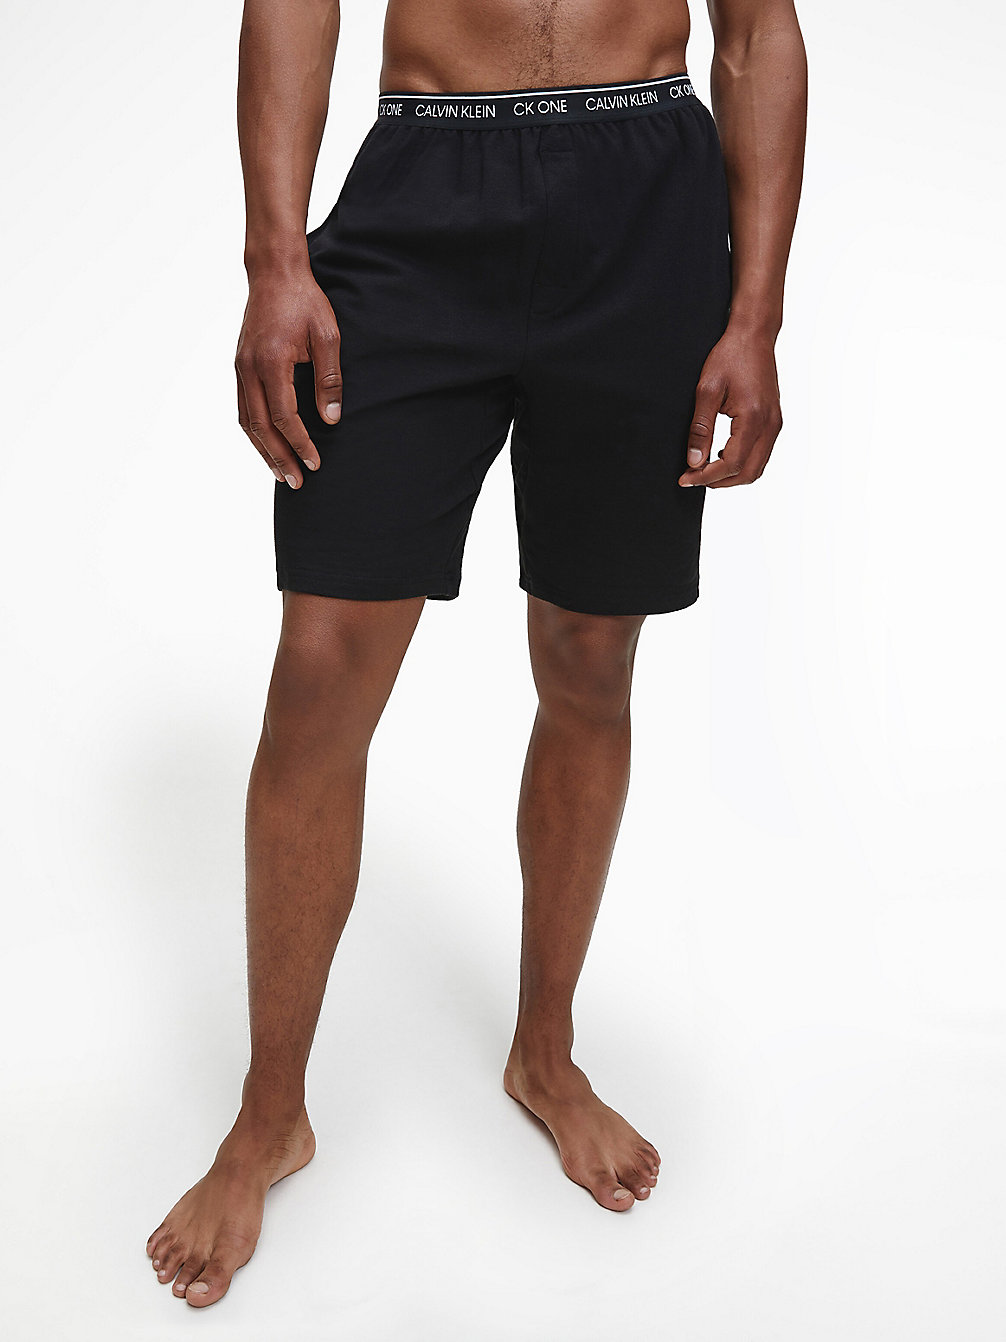 BLACK Lounge-Shorts - CK One undefined Herren Calvin Klein